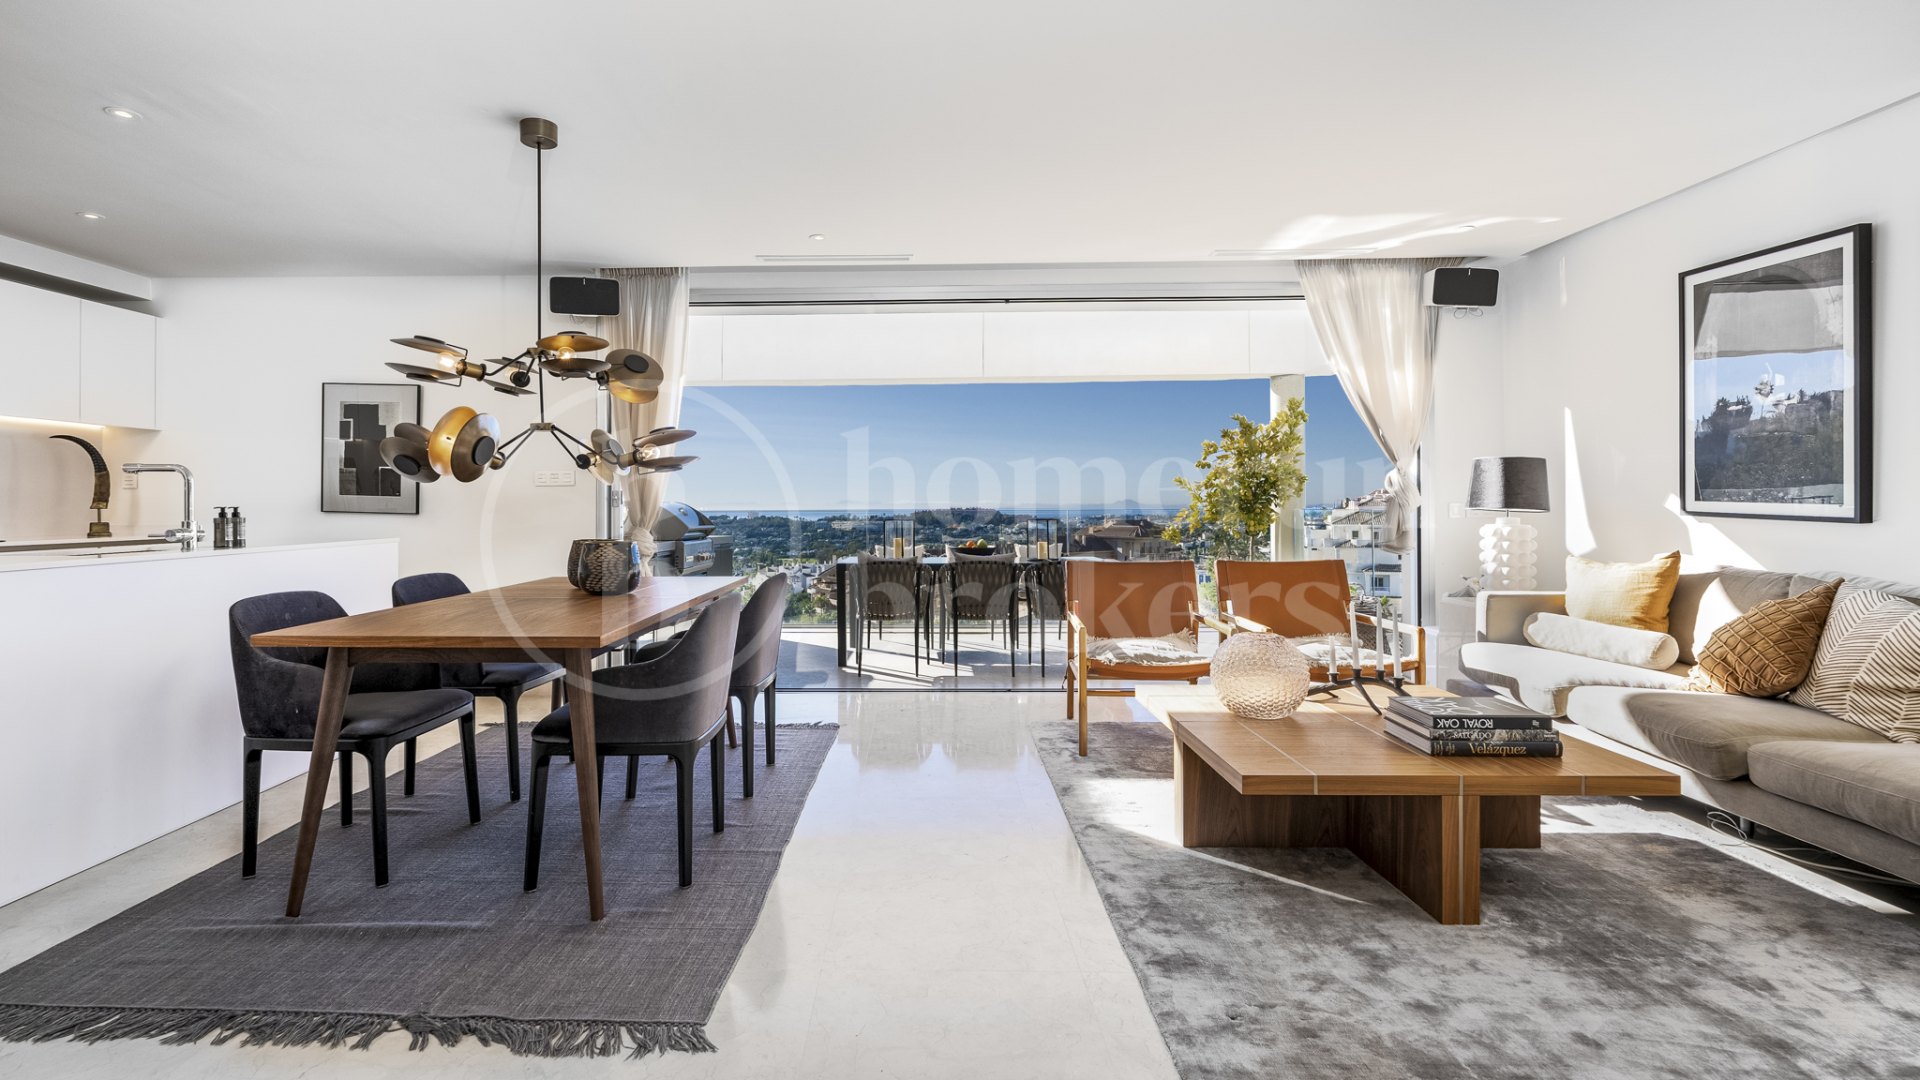 Takvåning La Morelia - Fantastisk duplex penthouse med privat pool och hisnande utsikt